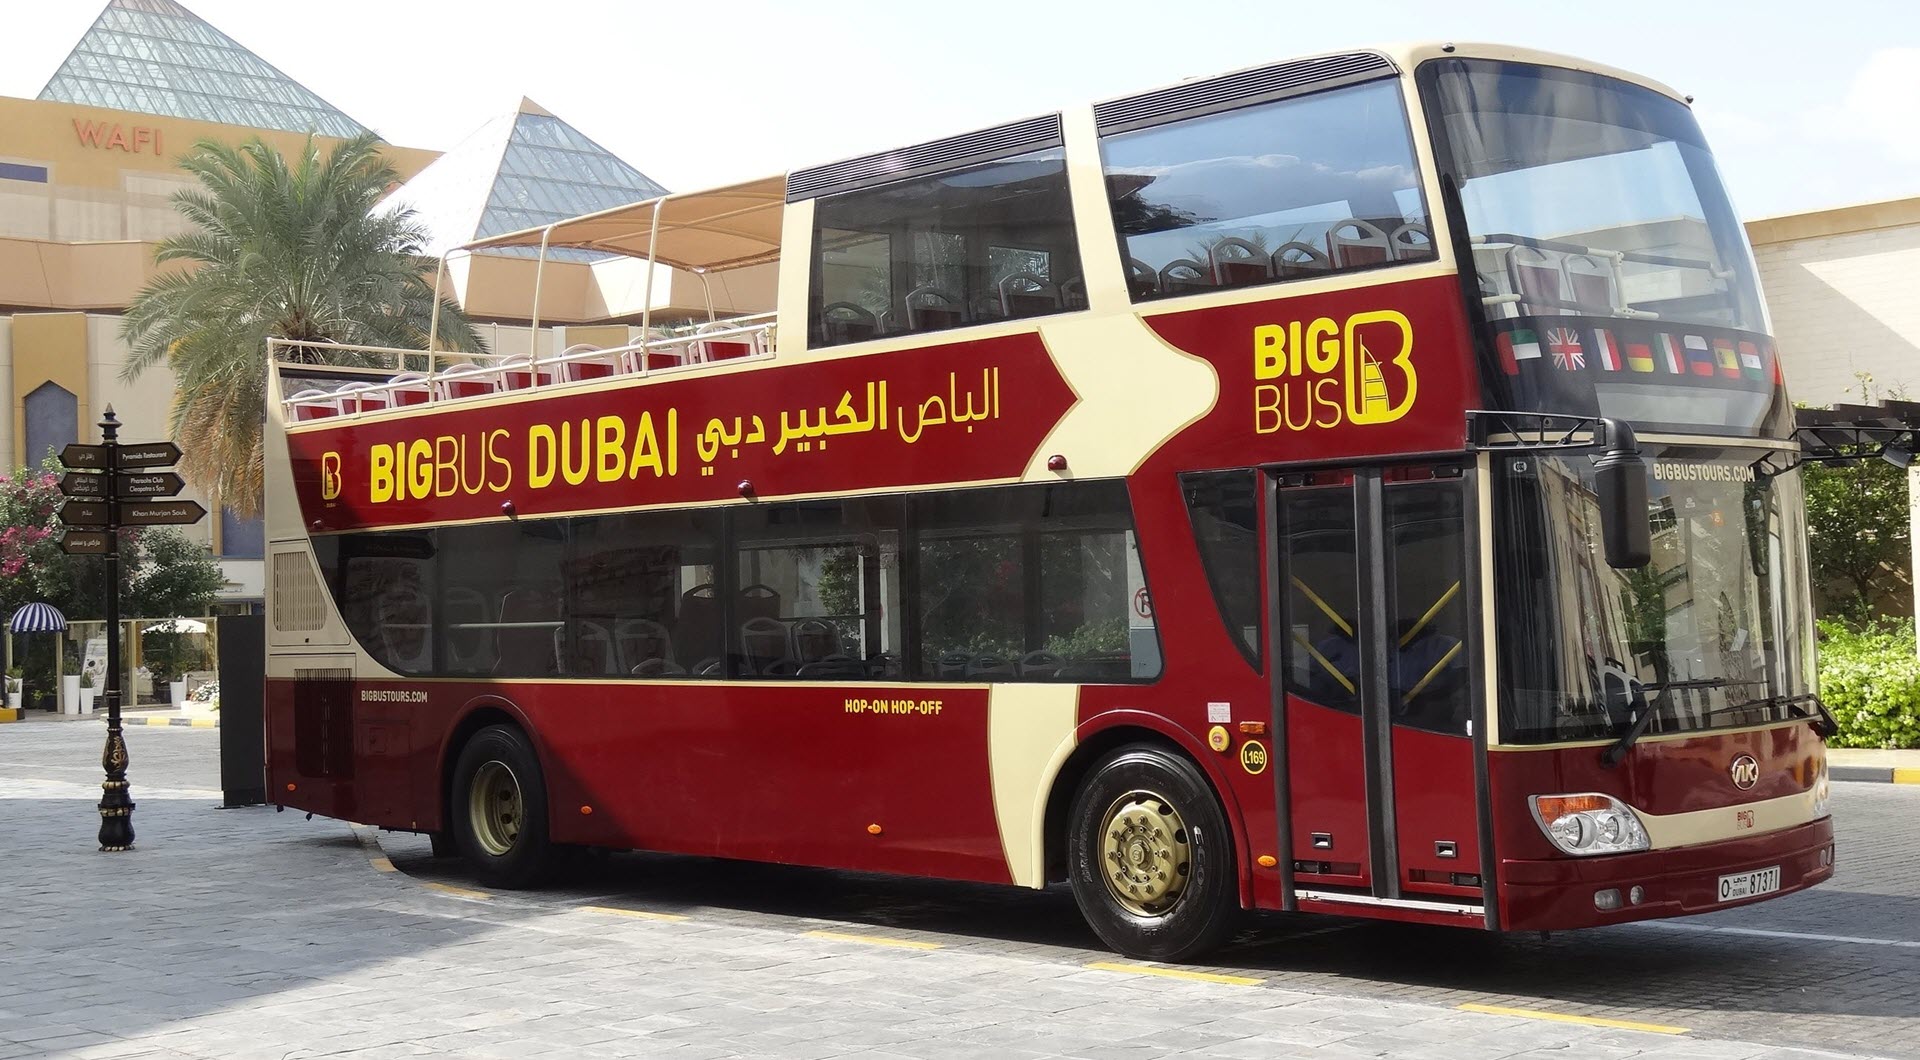 Big Bus Dubai Hop On Hop Off Tour Tour Look